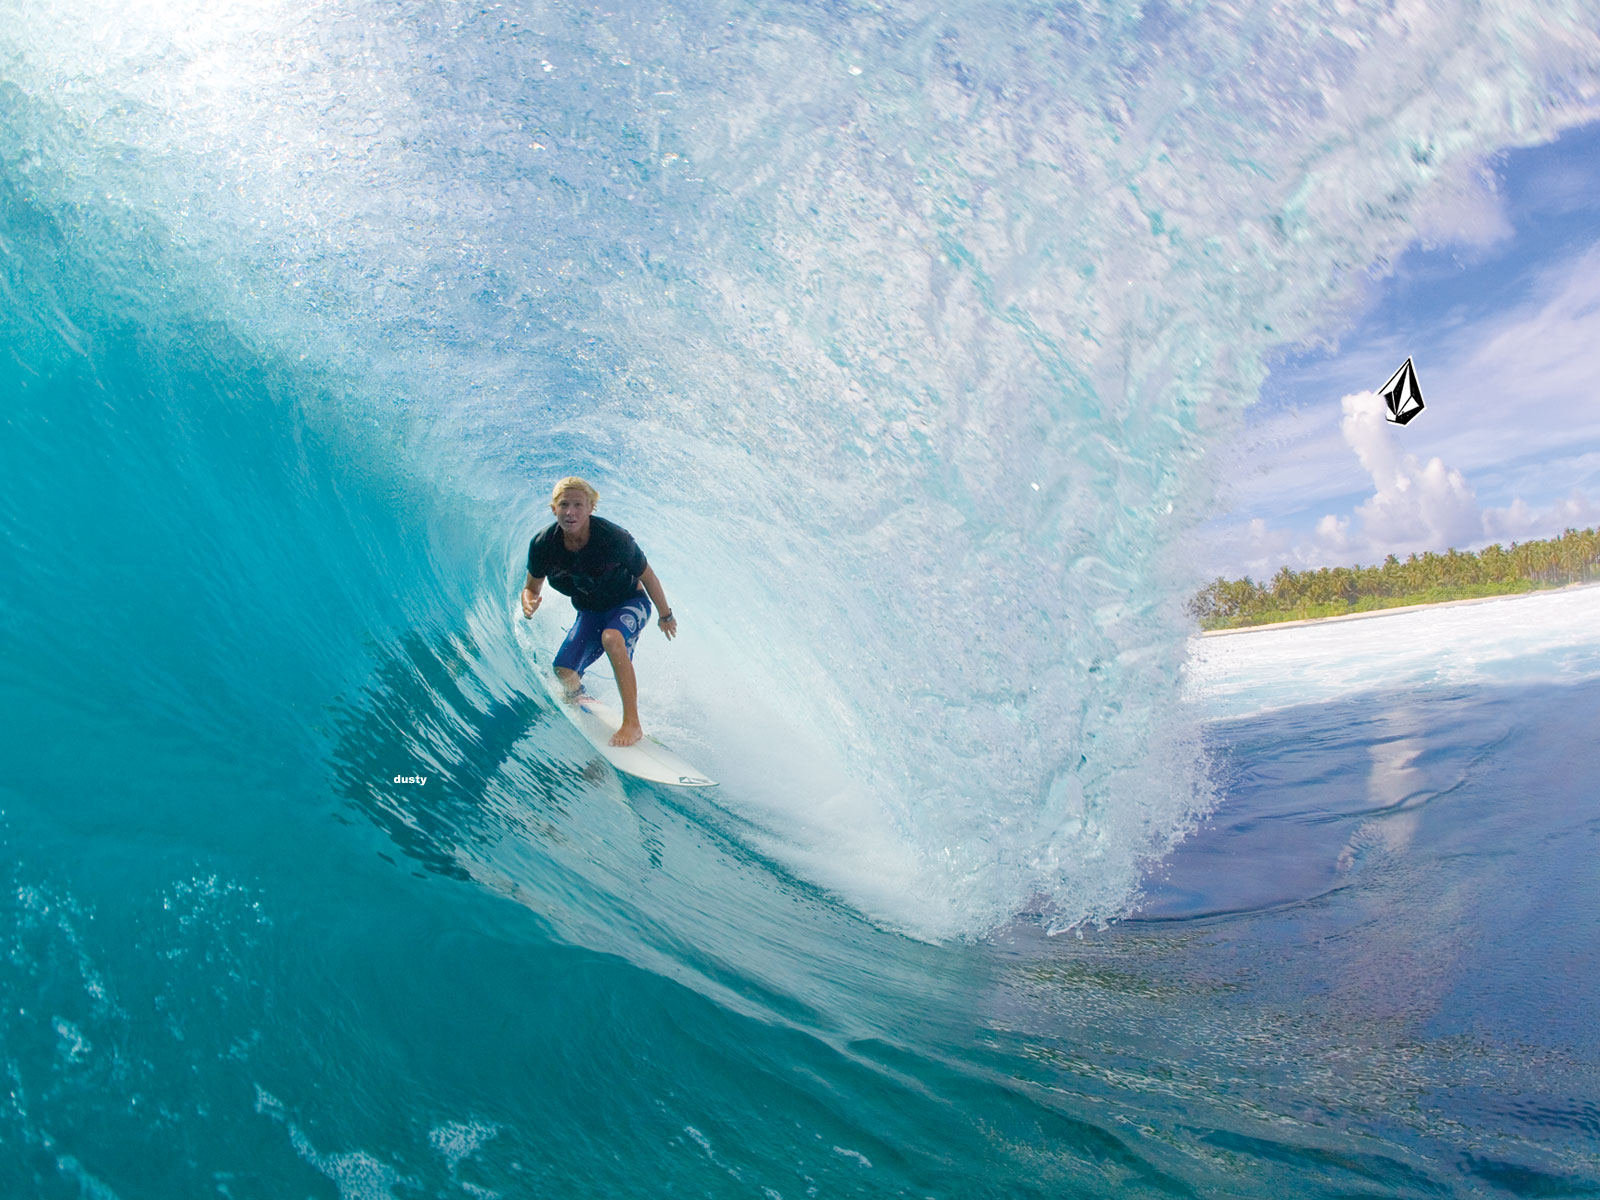 Kumpulan Gambar: Gambar-Gambar Berselancar ( Surfing ) di Lautan